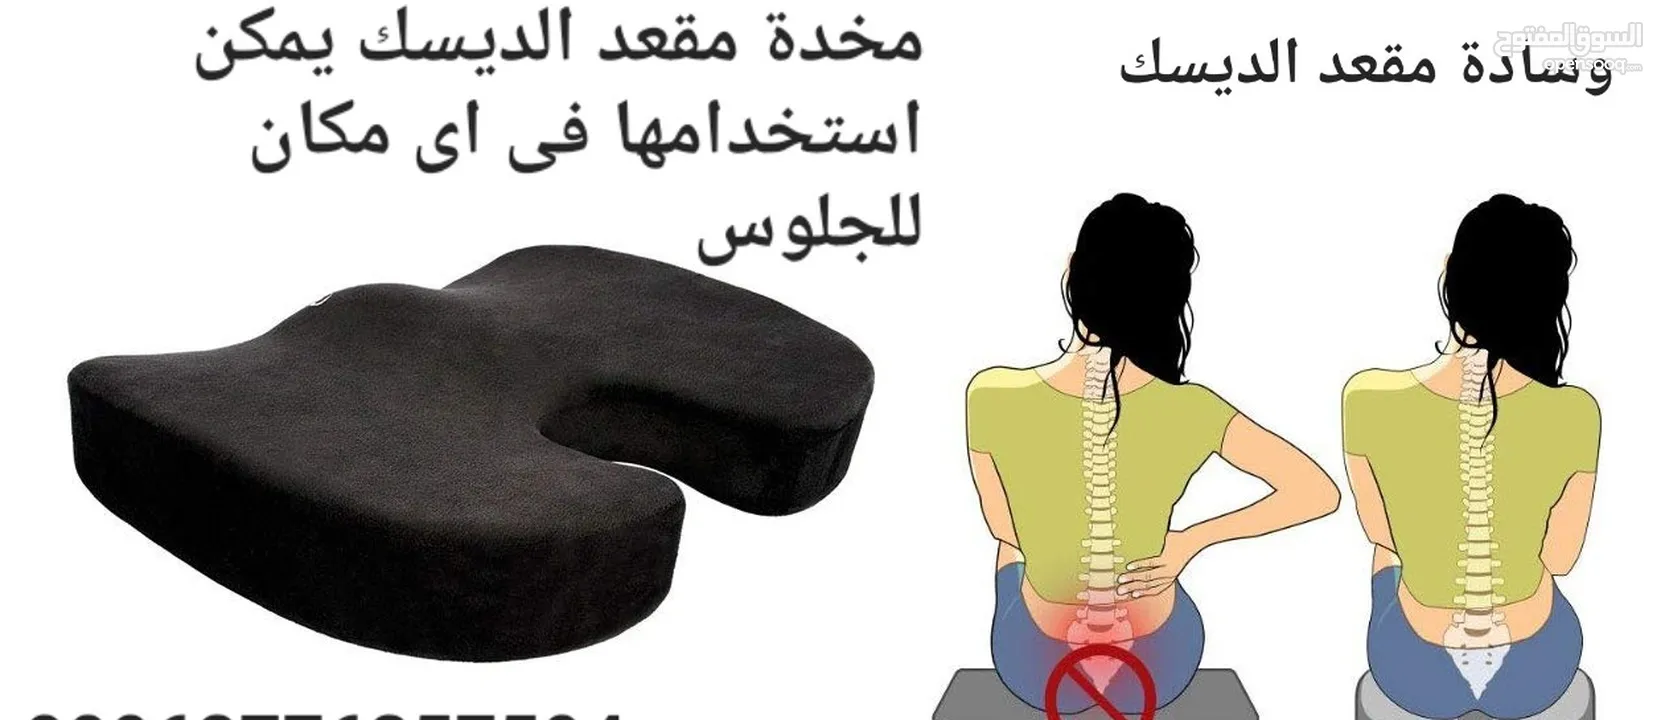 مخدة مقعد الديسك يمكن استخدامها فى اى مكان للجلوس وسادة مقعد طبي لمرضي الديسك مسند جلوس طبي لعلاج ال